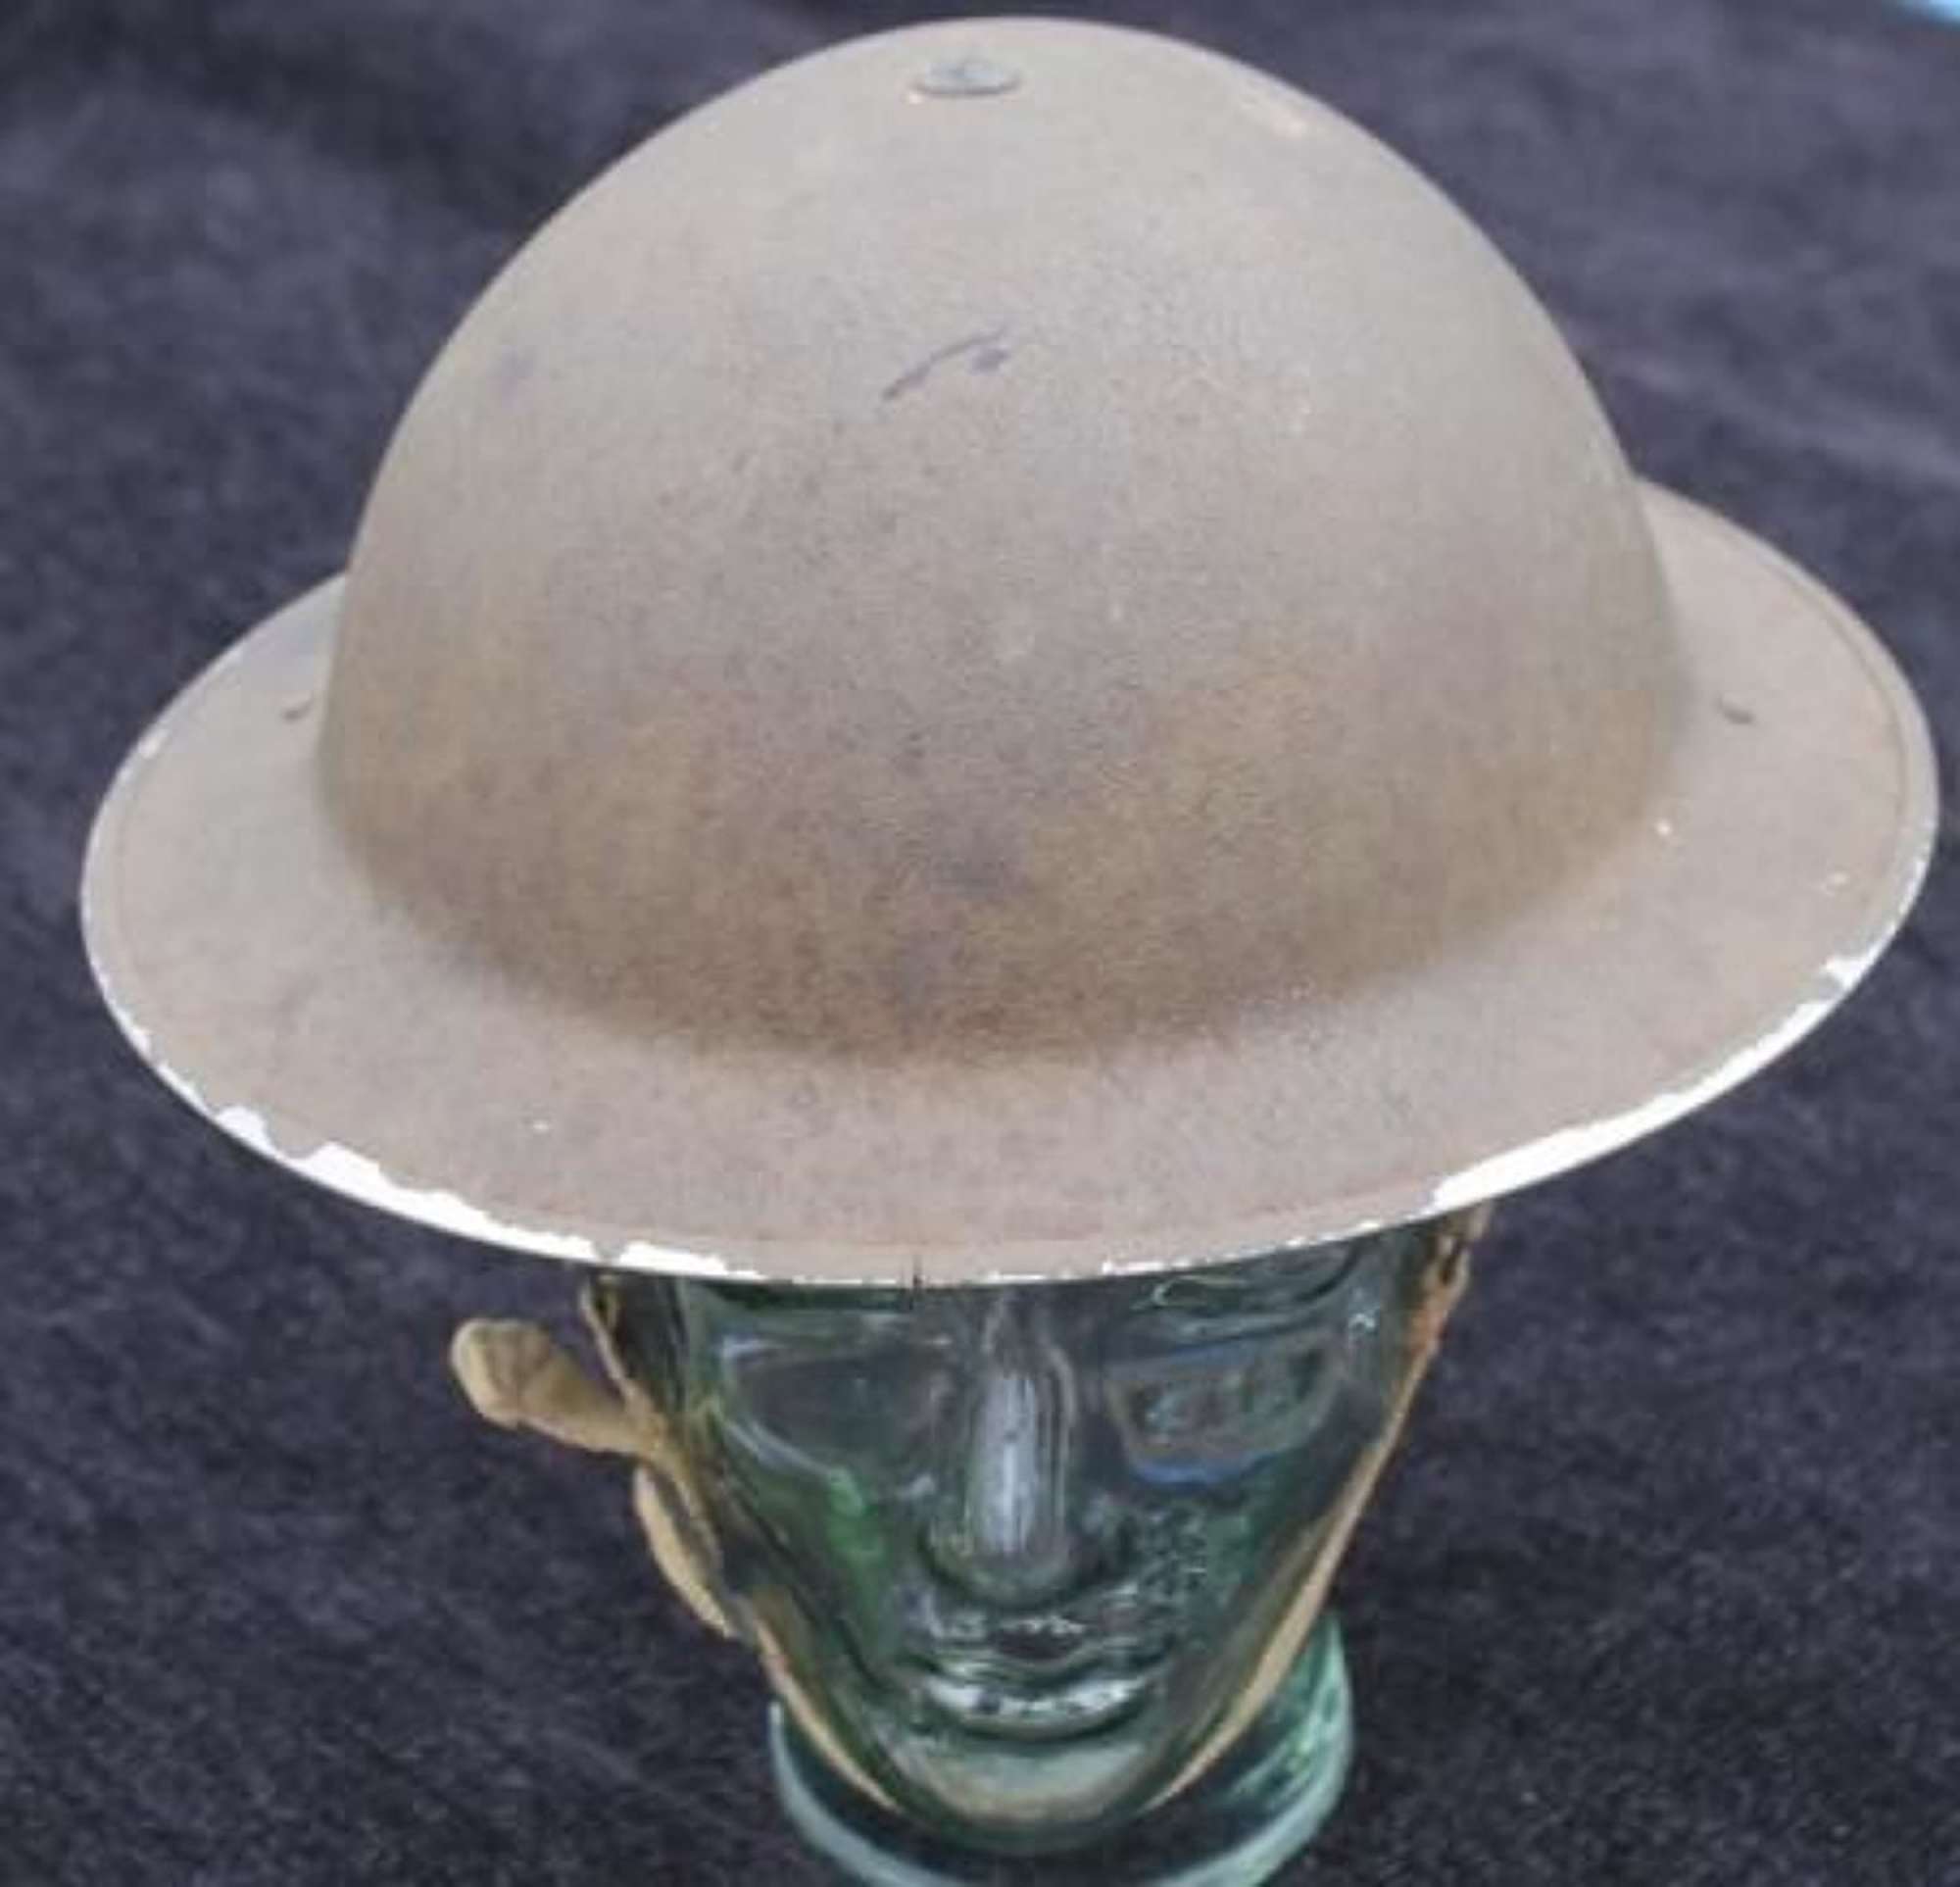 MK II Steel Helmet 1940